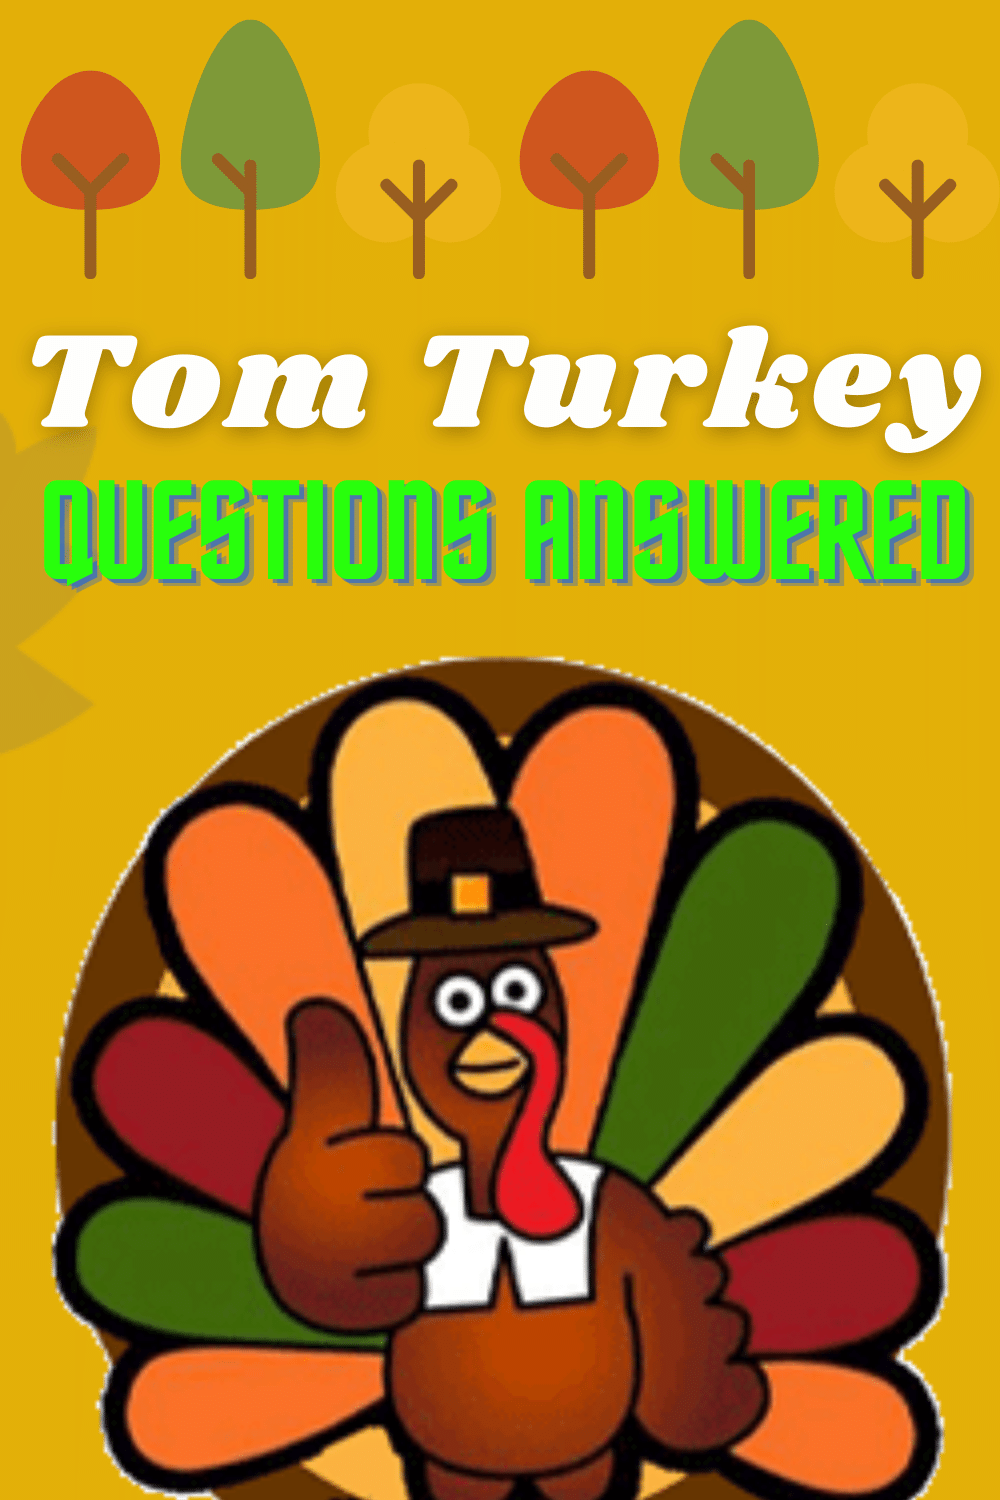 Tom Turkey's FAQ Page